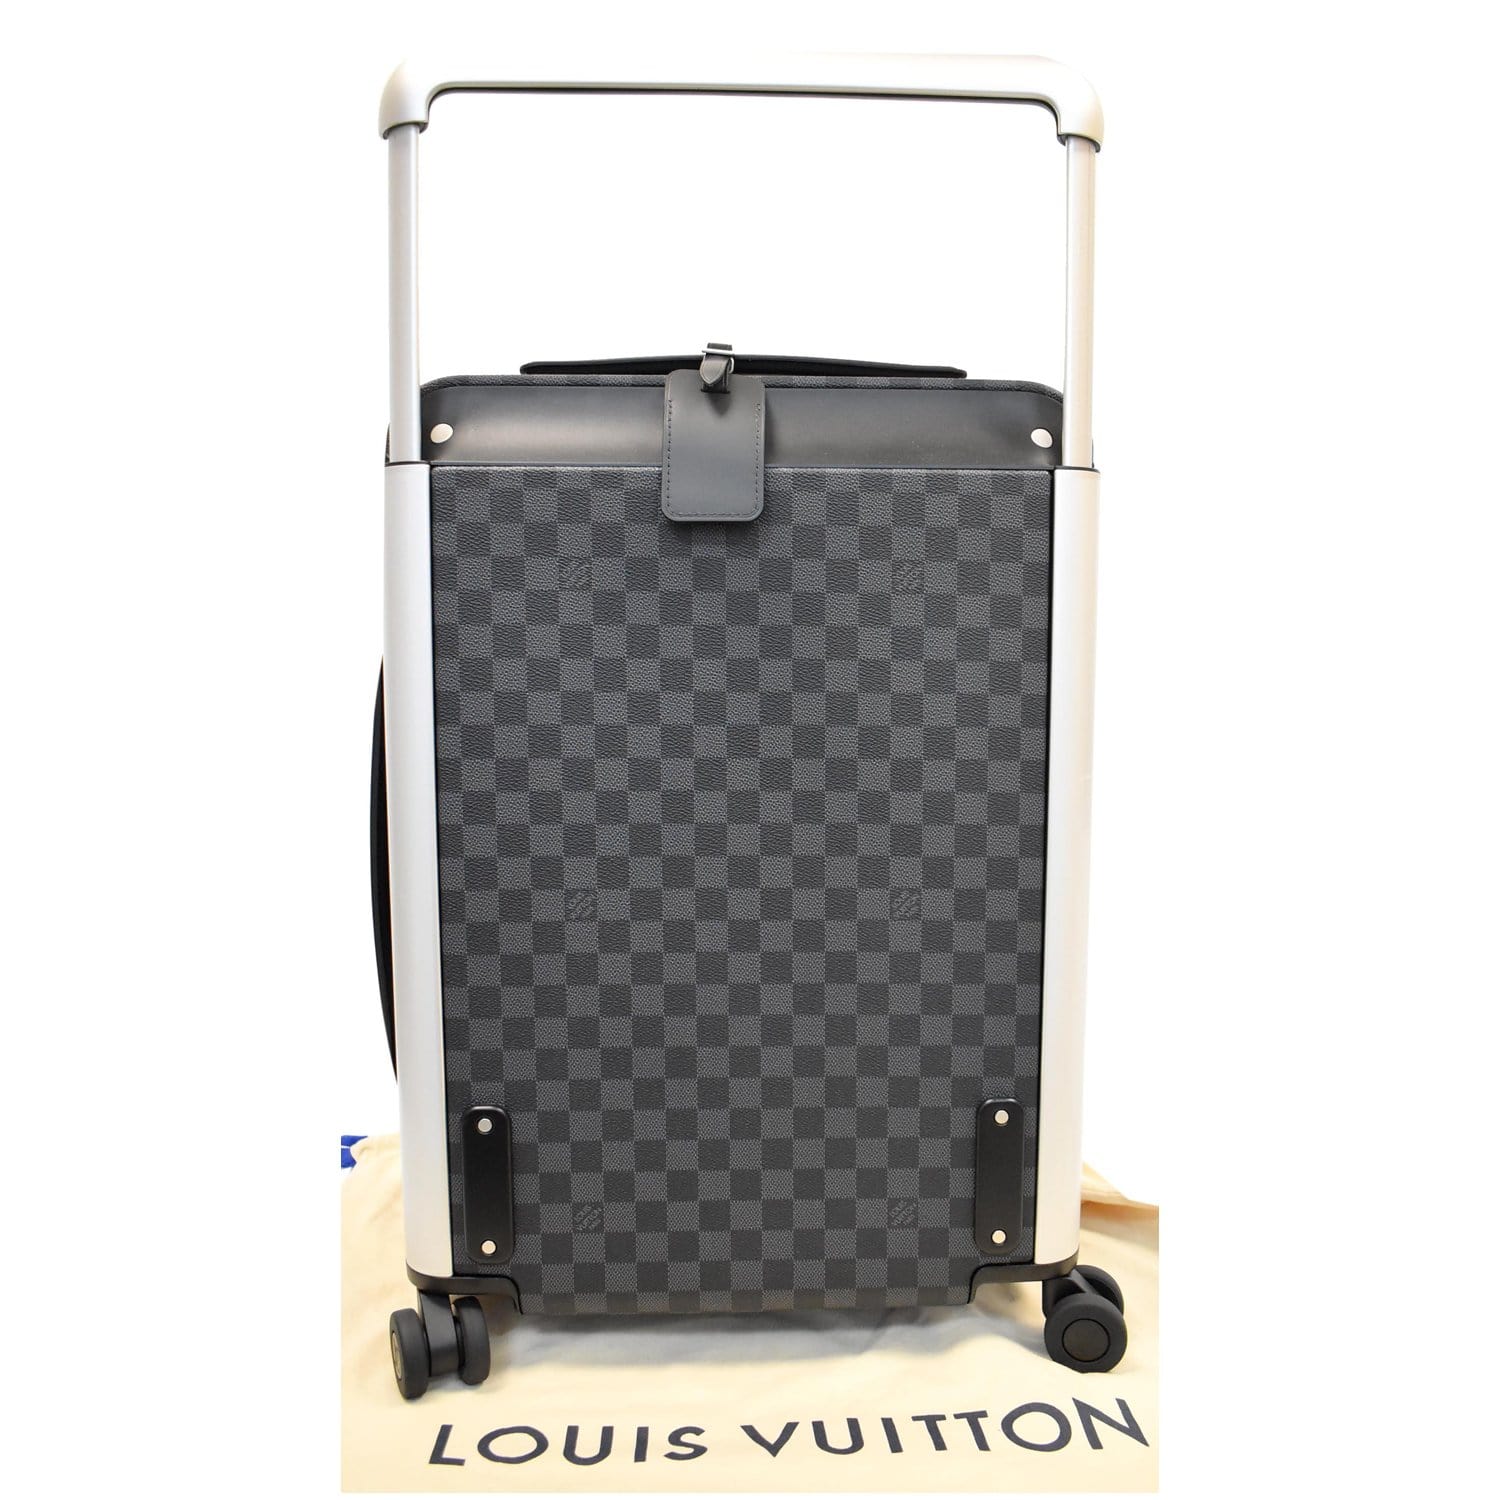 LOUIS VUITTON, Horizon 55 Rolling Luggage